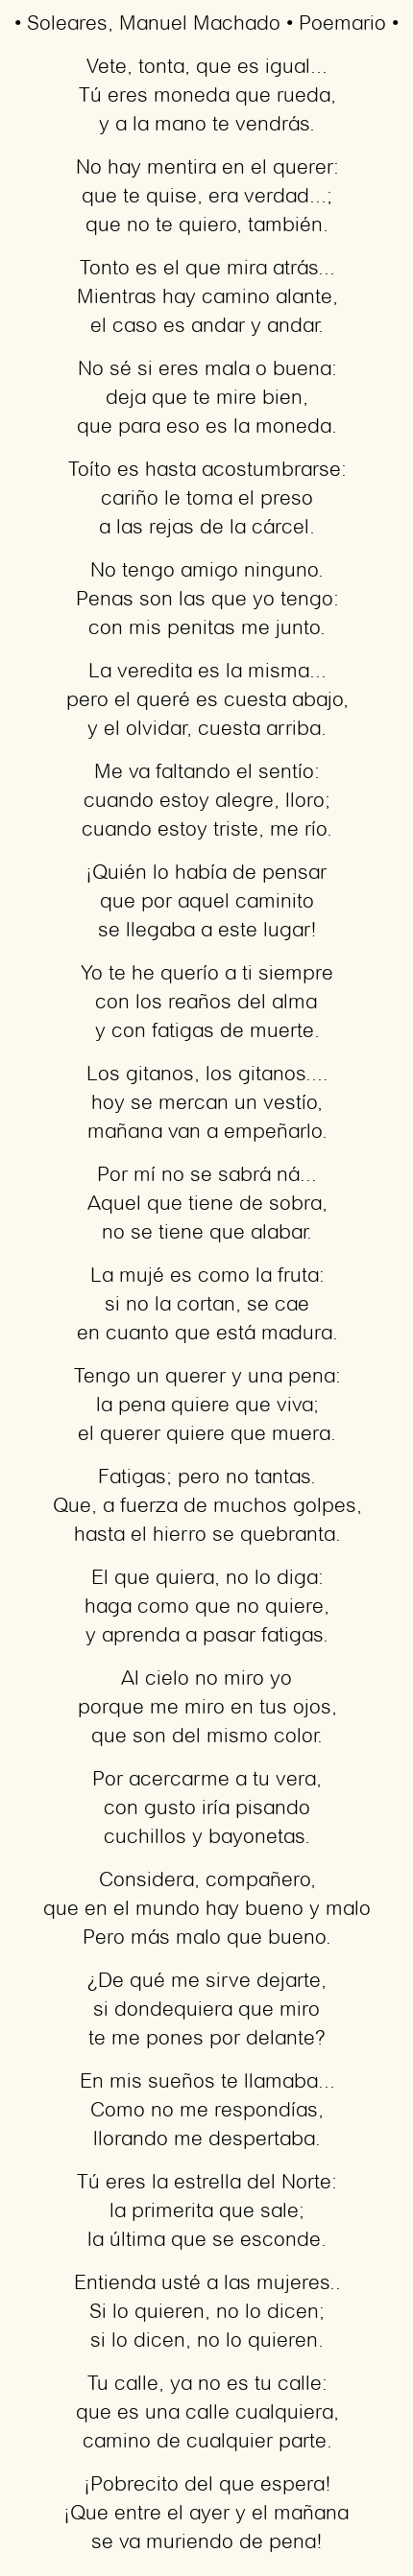 Imagen con el poema Soleares, por Manuel Machado